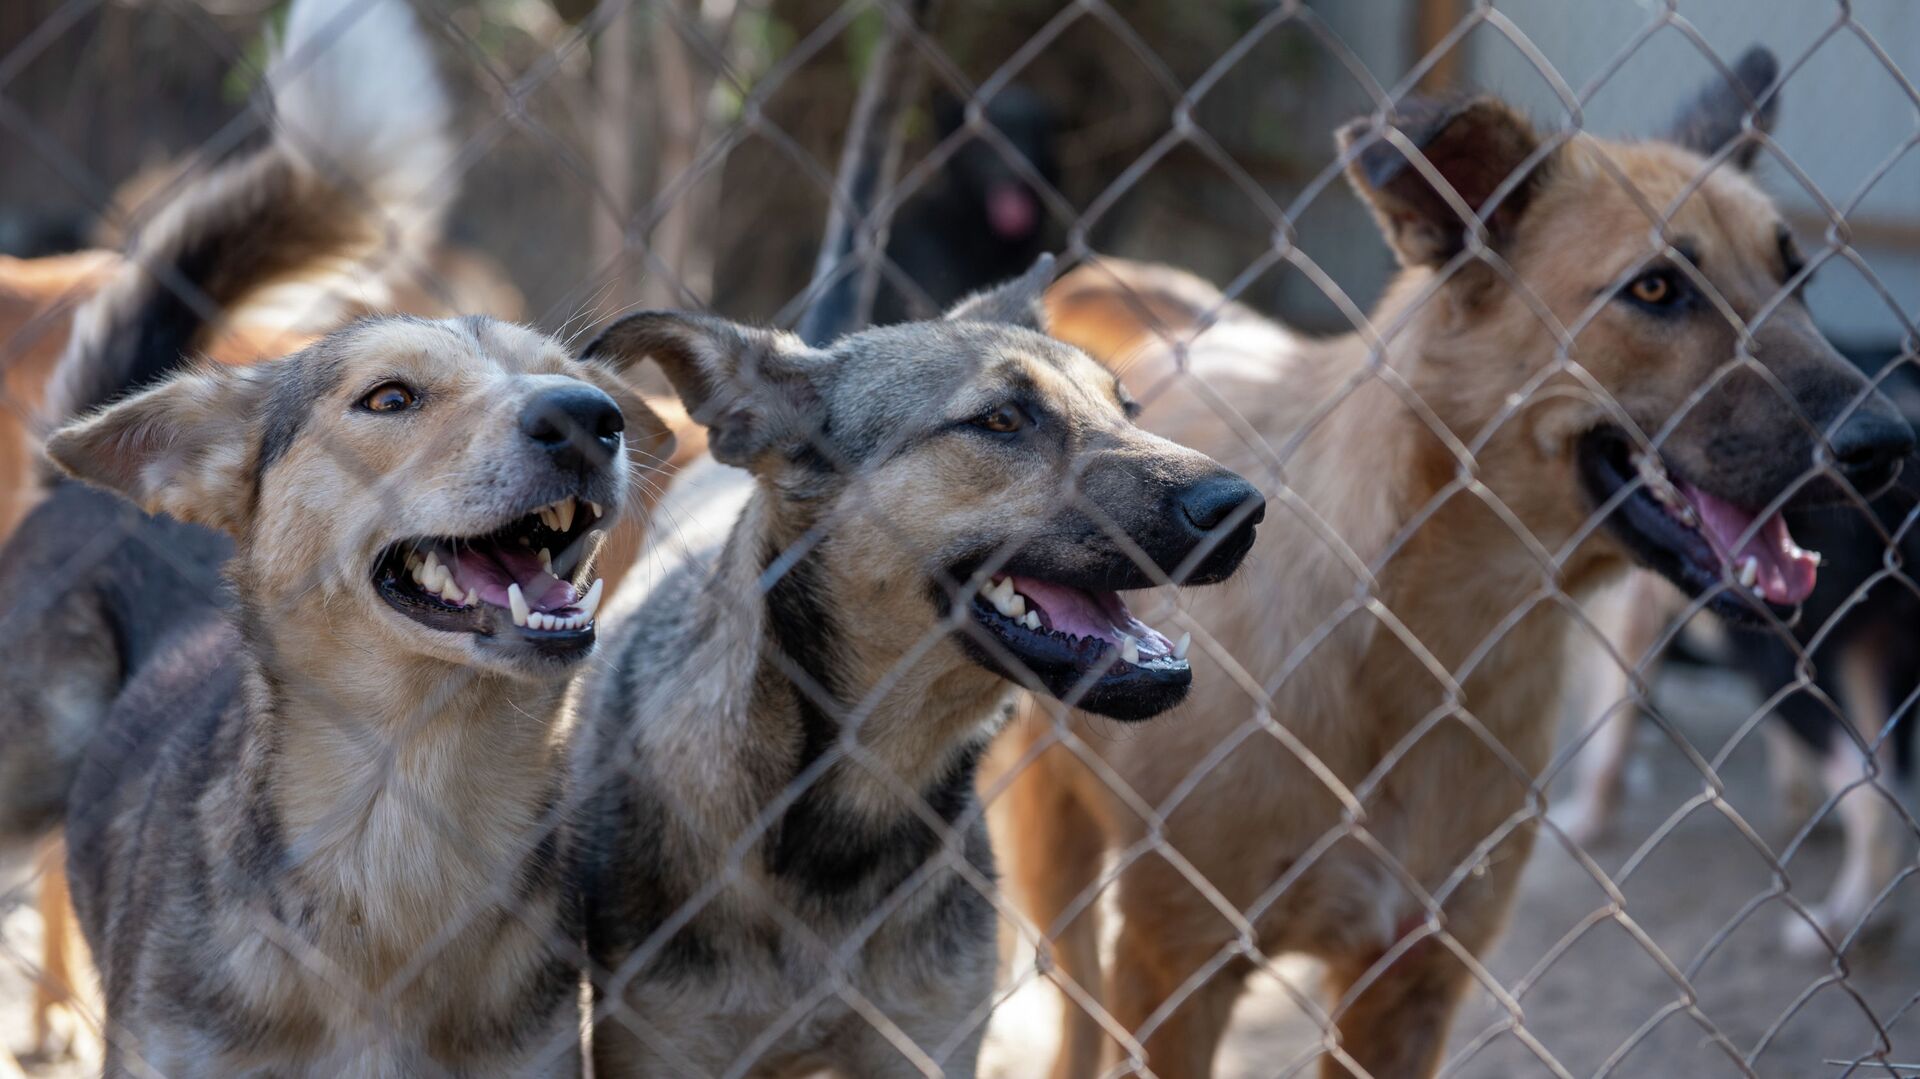 87 собак и 11 кошек обнаружили зооволонтеры на черной передержке в дачном поселке Али - Sputnik Казахстан, 1920, 10.12.2021